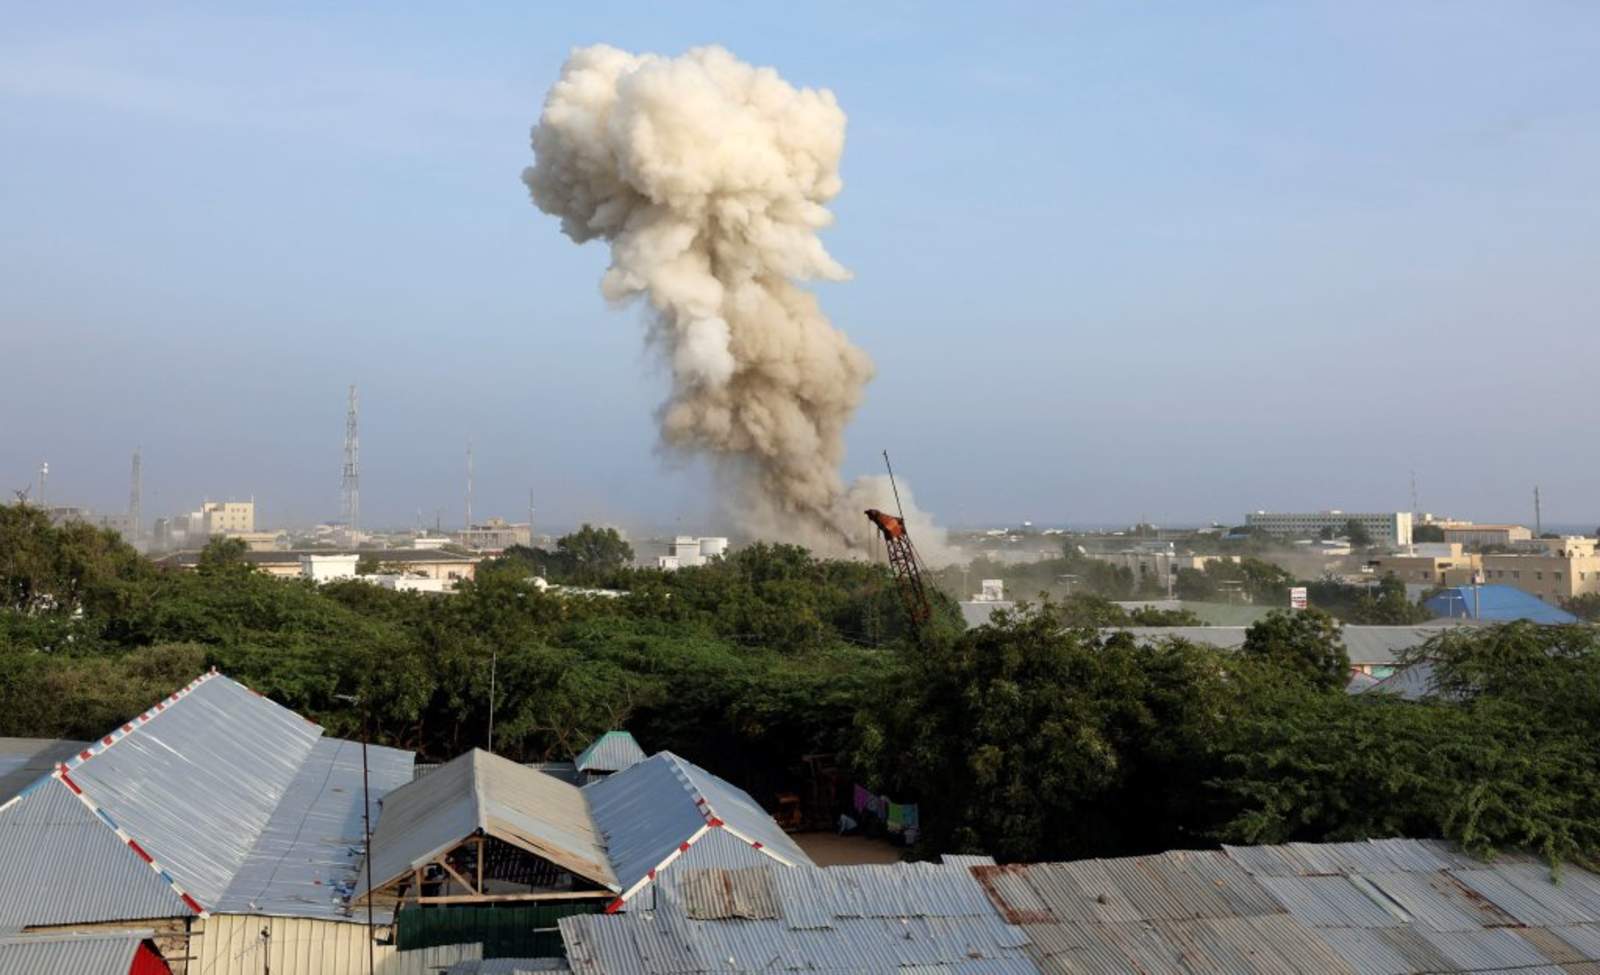 Coches bomba dejan al menos 13 muertos en Somalia. Noticias en tiempo real